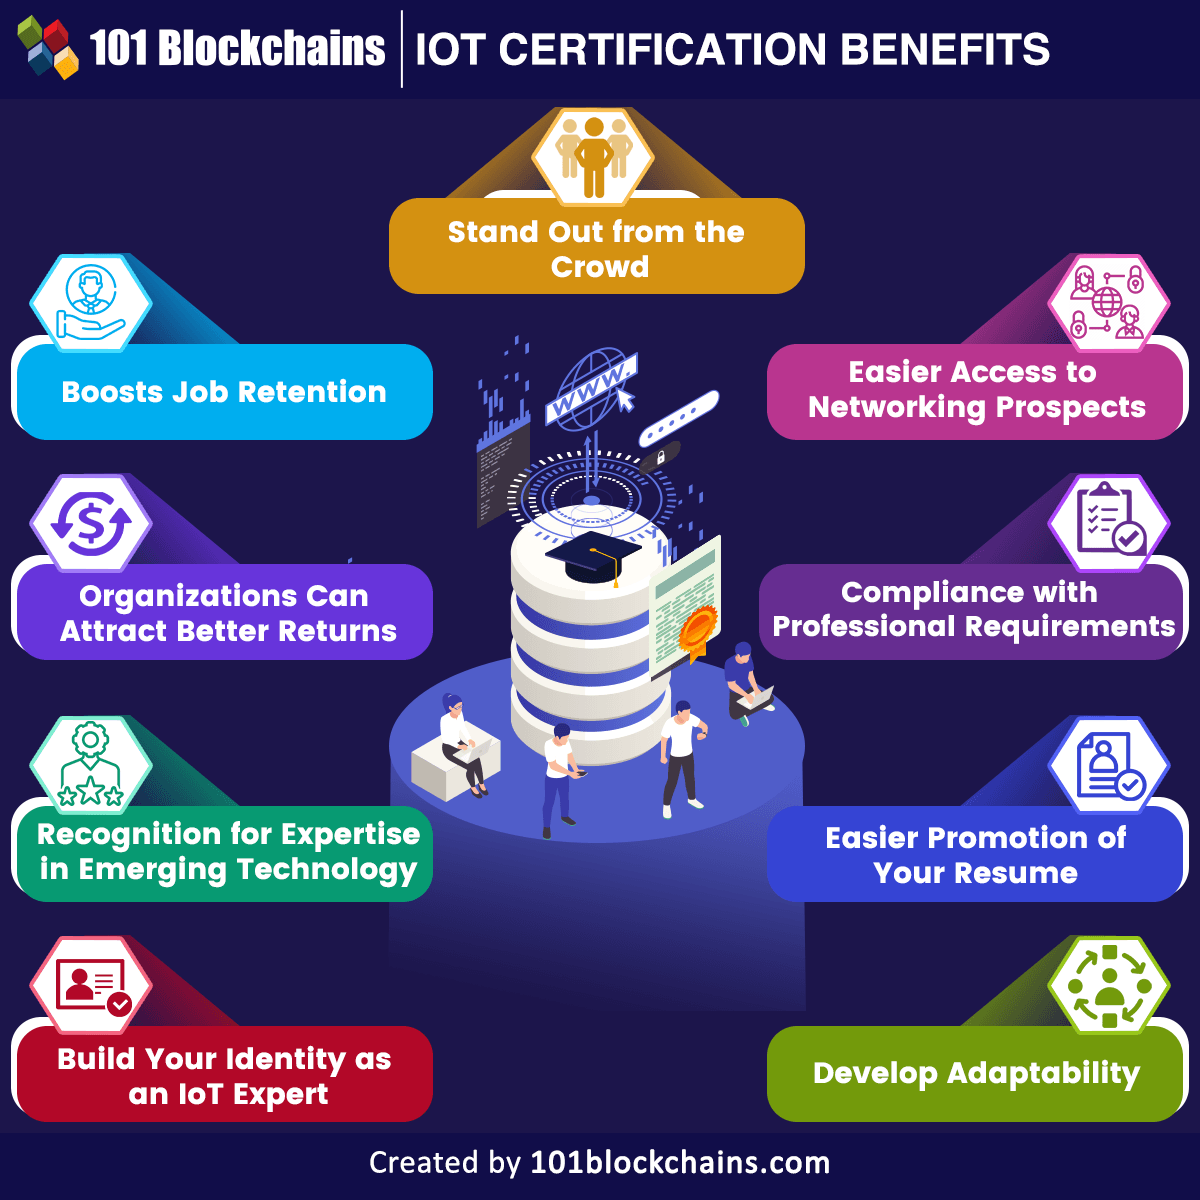 Benefits of IoT certification